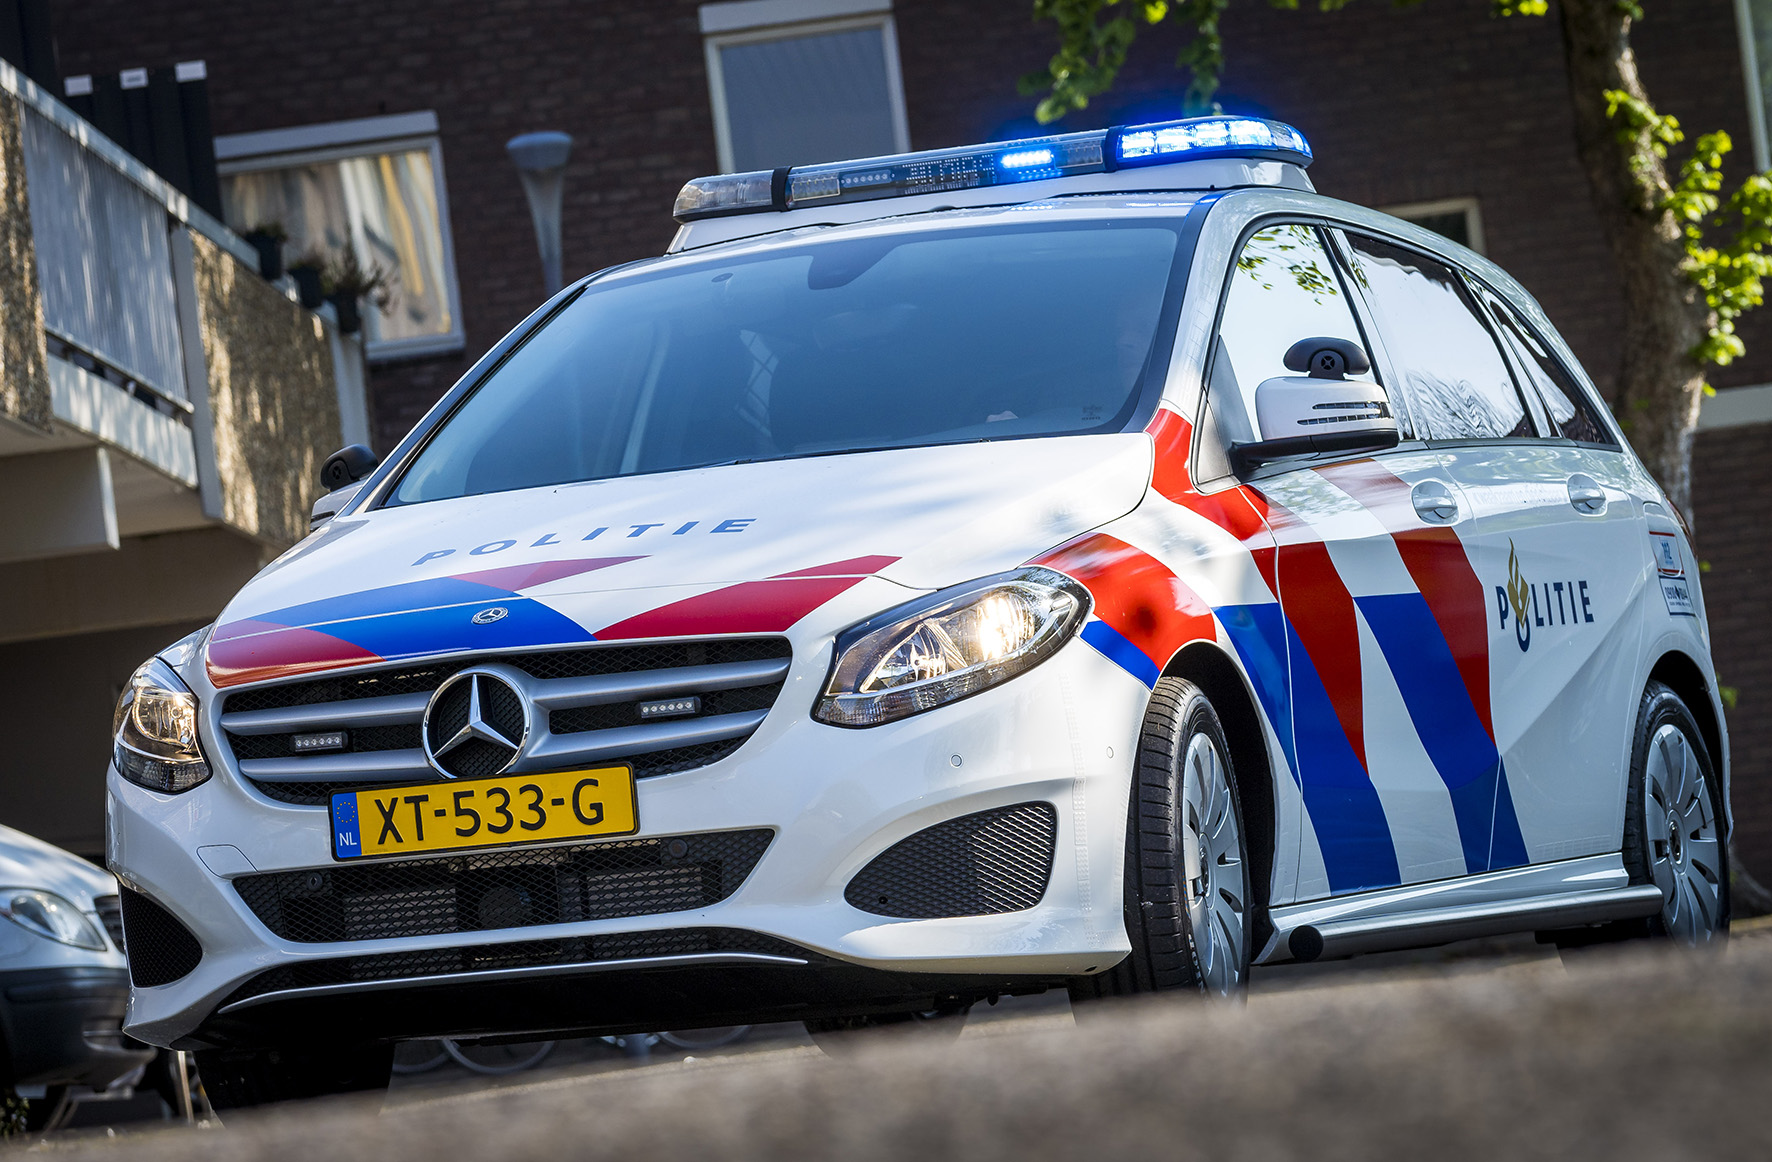 Politie naar de Agorabaan in Lelystad vanwege aanrijding met letsel